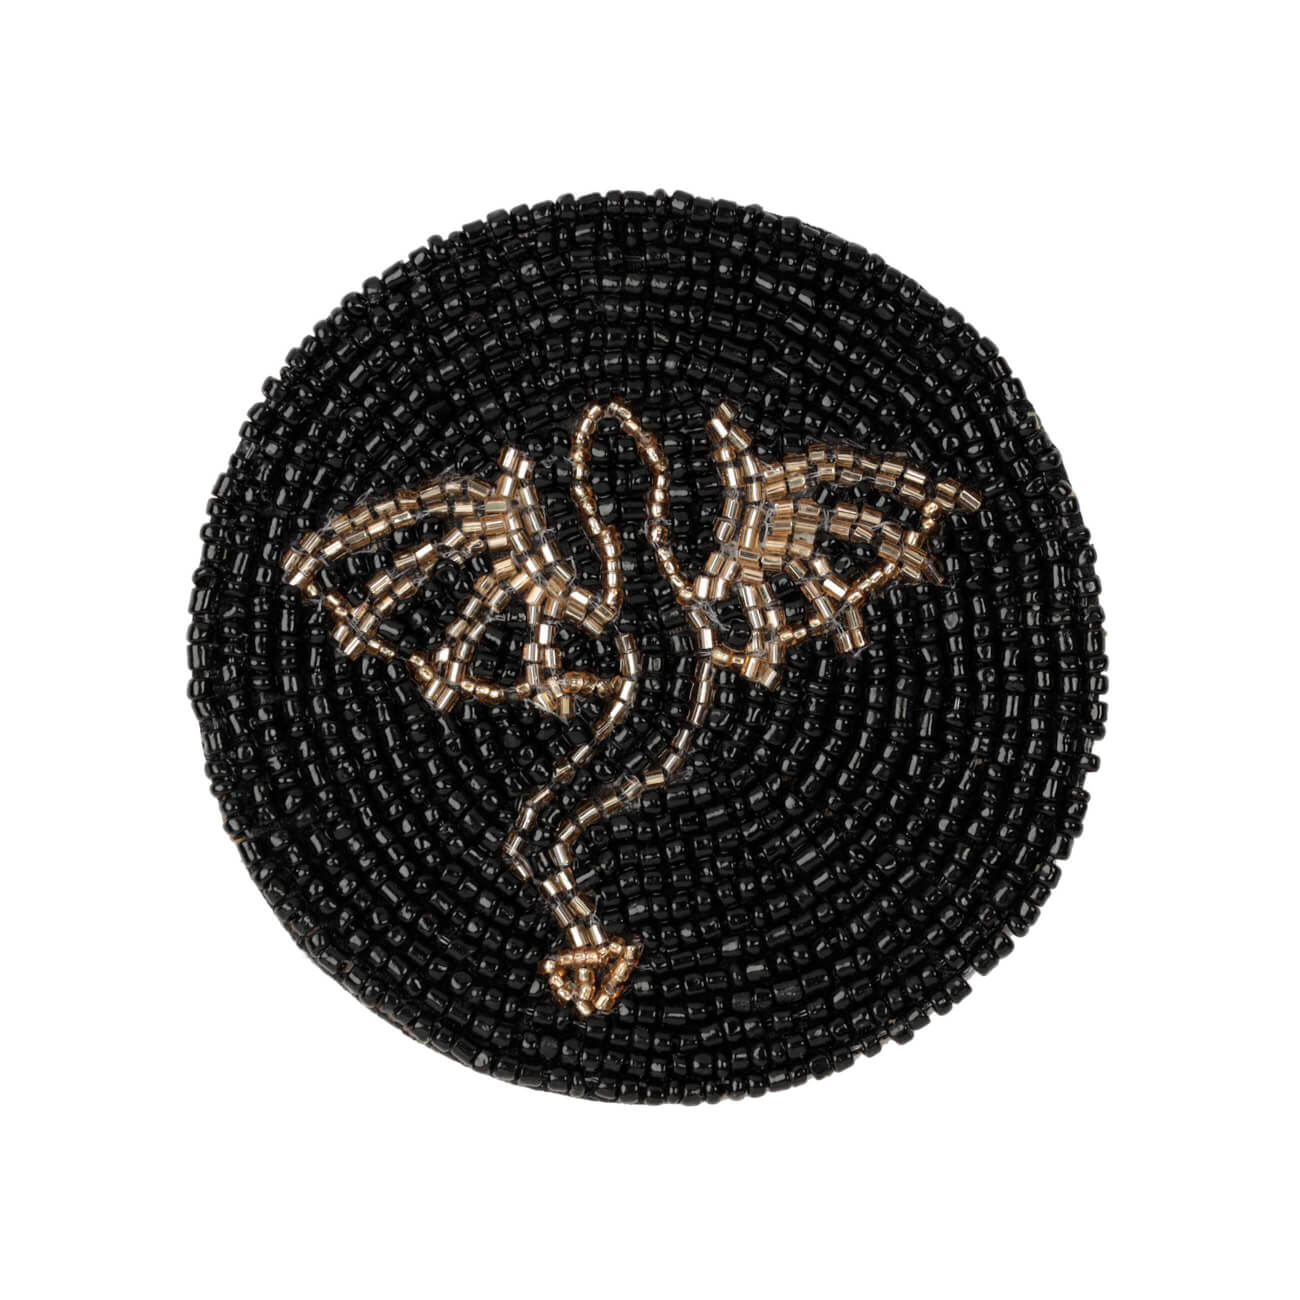 Подставка под кружку, 10 см, бисер, круглая, черная, Дракон, Art beads салфетка под приборы 36 см бисер круглая золотистая кролик art beads